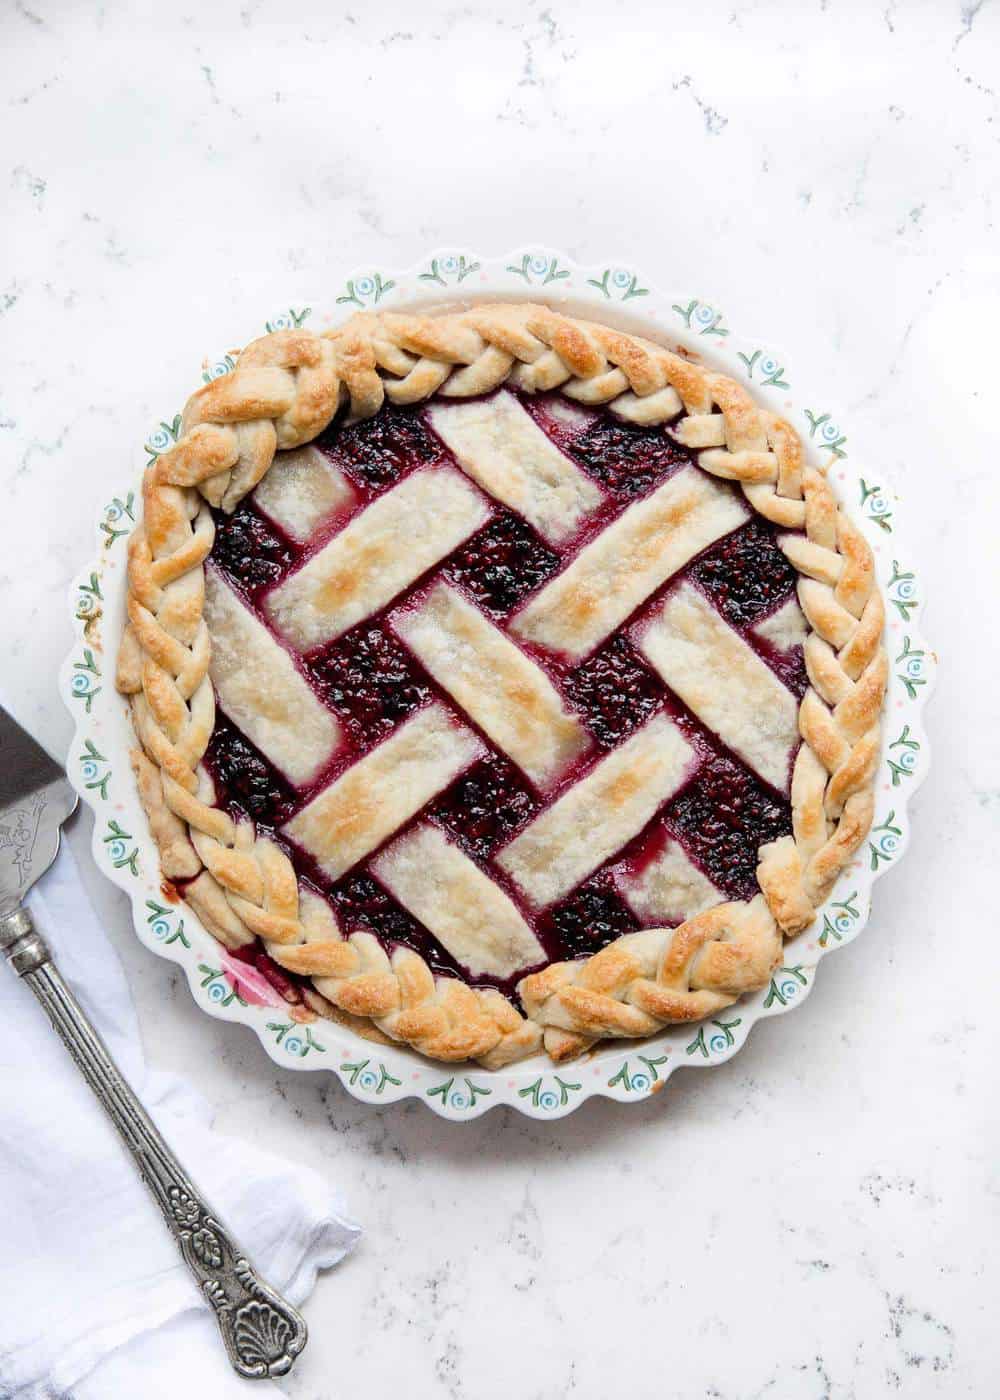 Razzleberry pie with lattice pie crust.